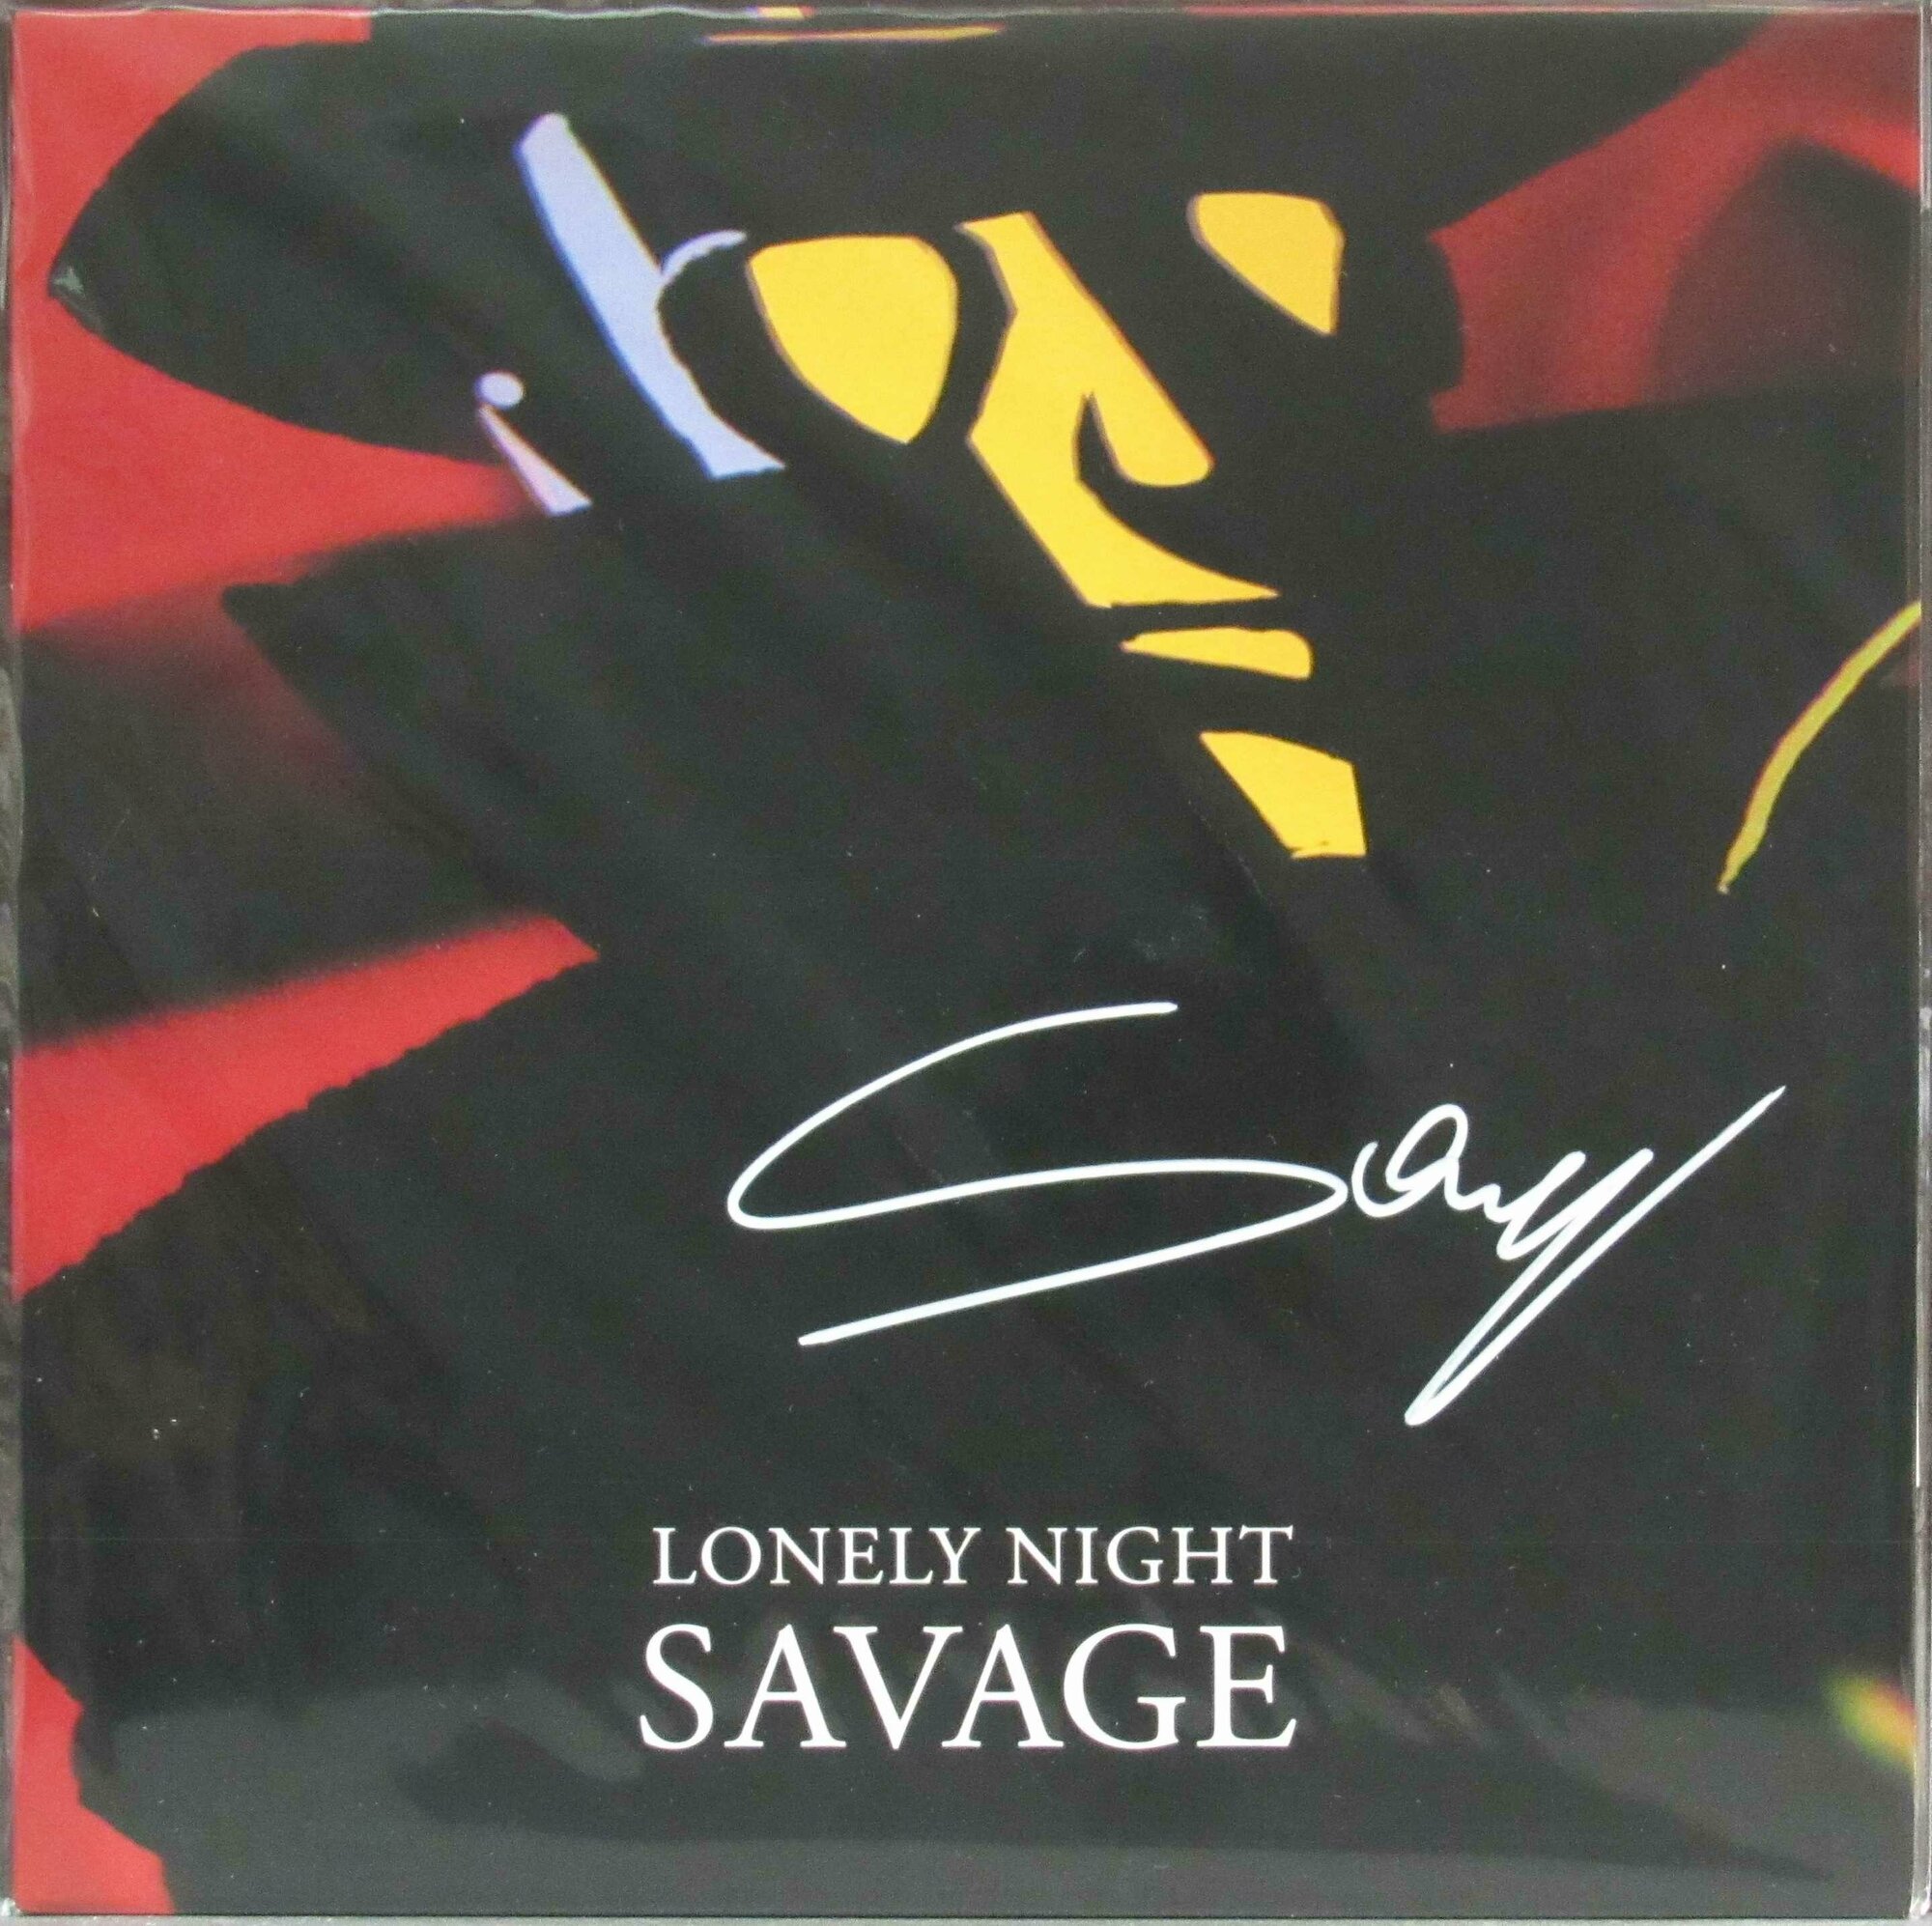 Savage "Виниловая пластинка Savage Lonely Night"